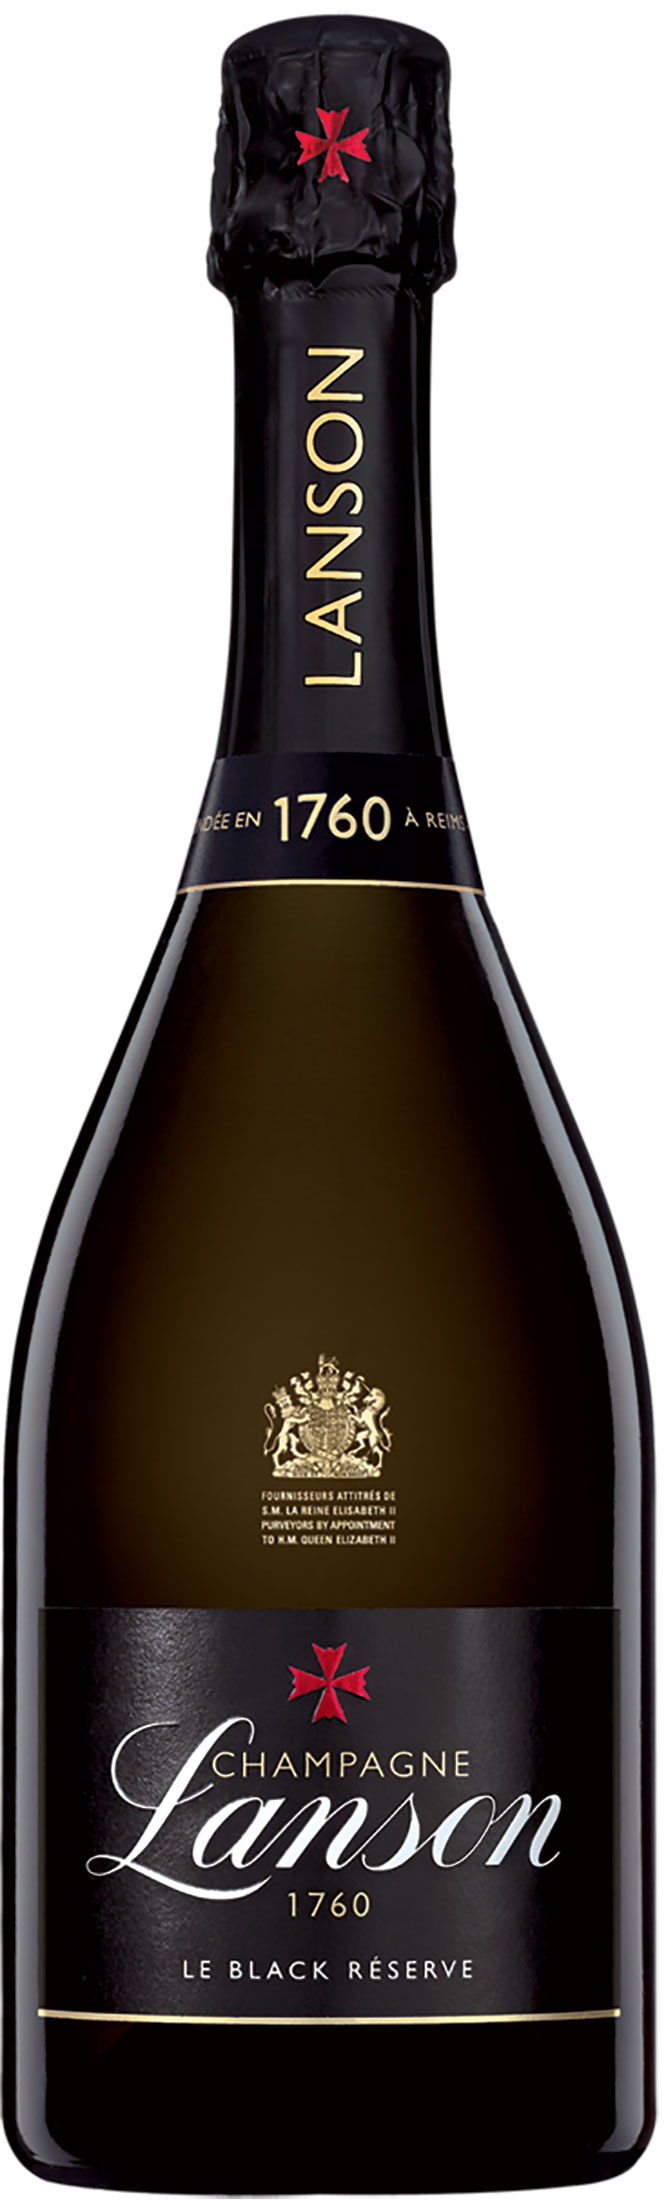 Lanson Champagne Le Black Réserve Brut 2014